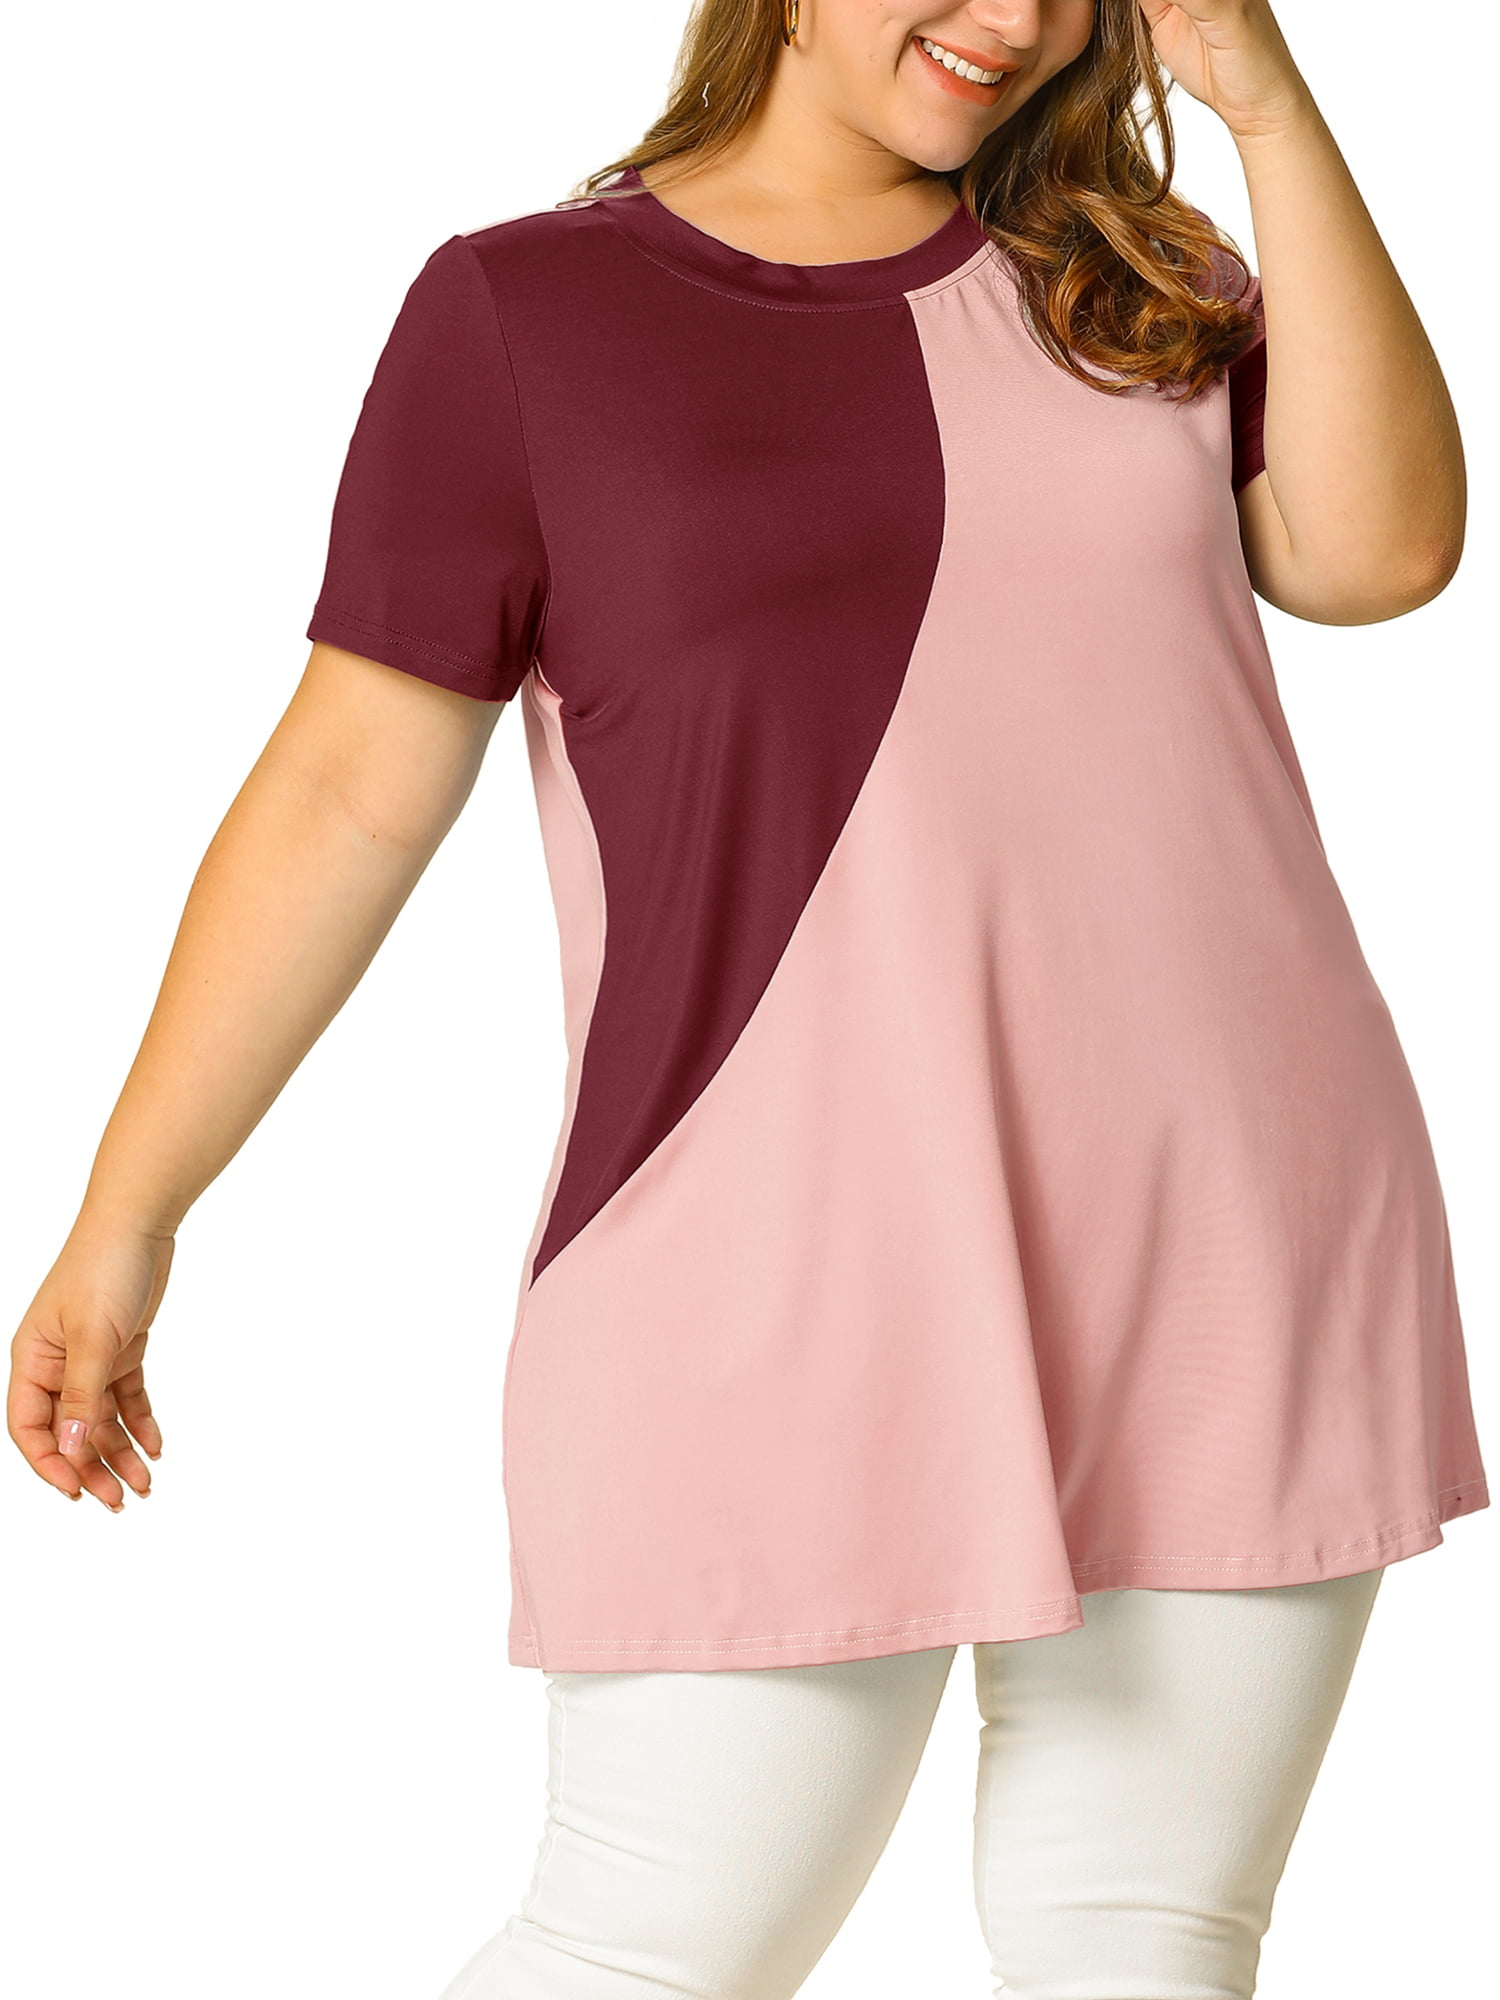 jorden locker subtraktion Women's Plus Size Summer Color Block Blouse Short Sleeve Tunic Top -  Walmart.com